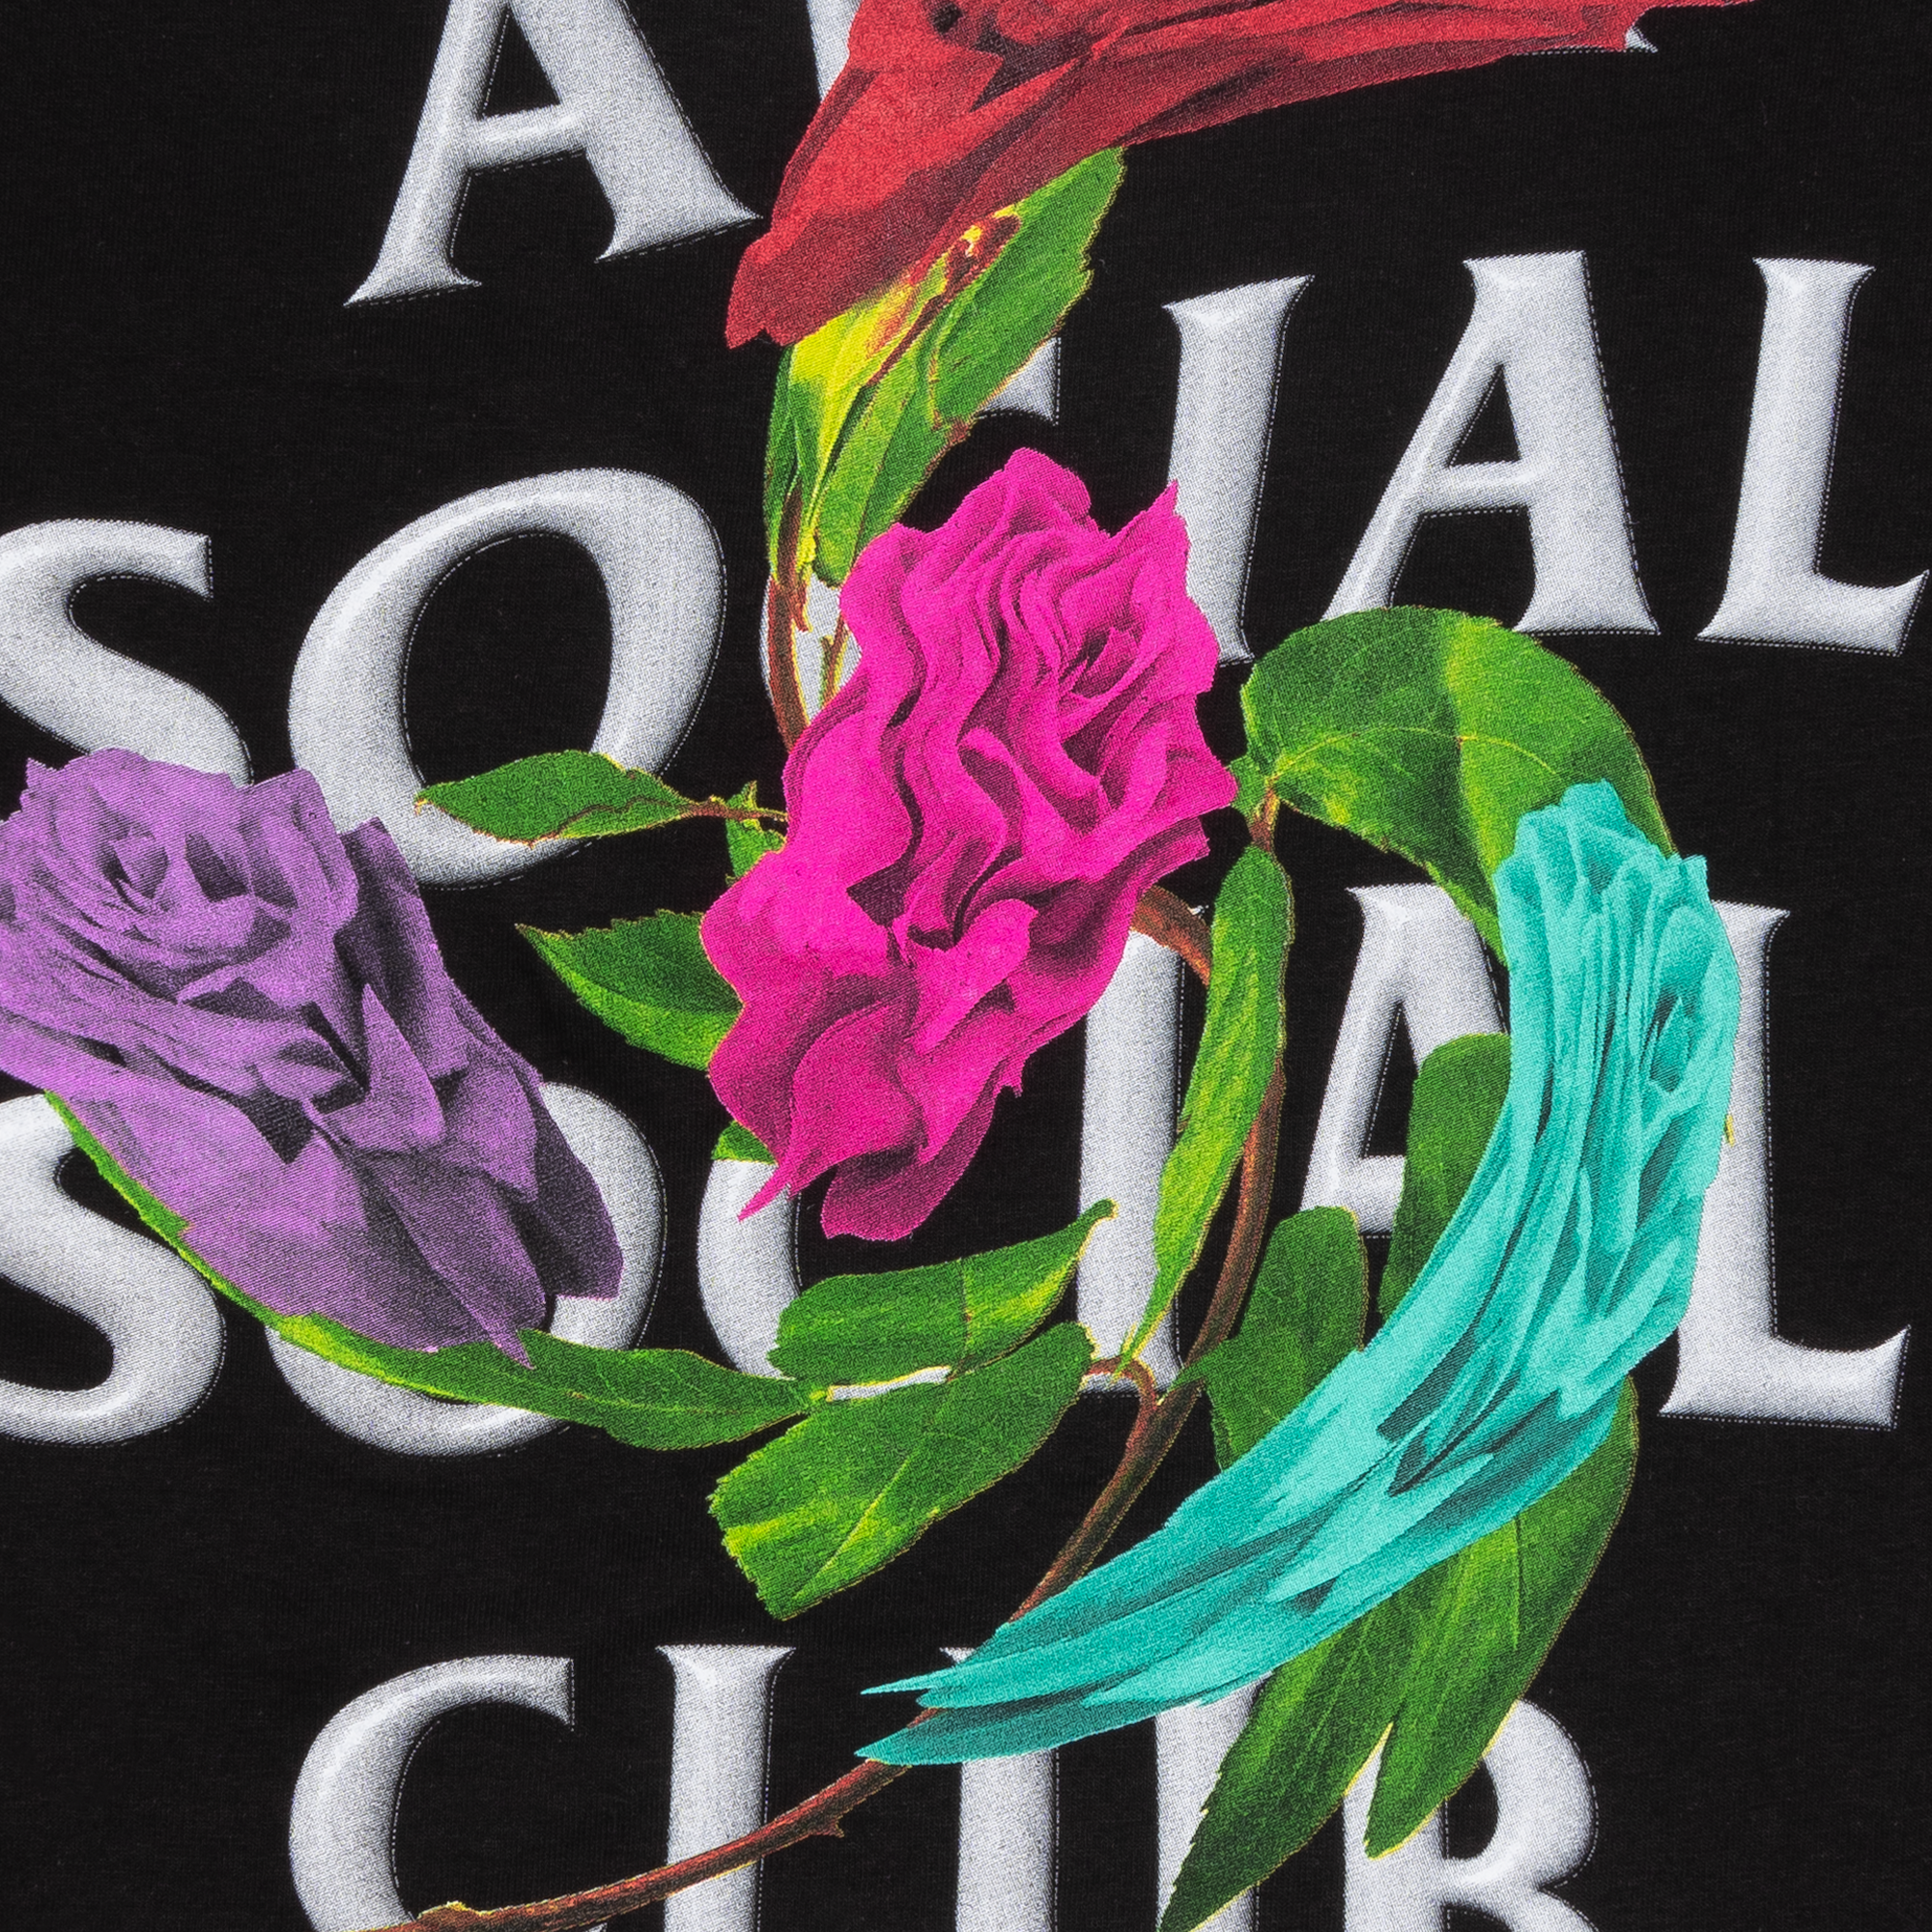 Anti Social Social Club Thorns Tee Black-PLUS